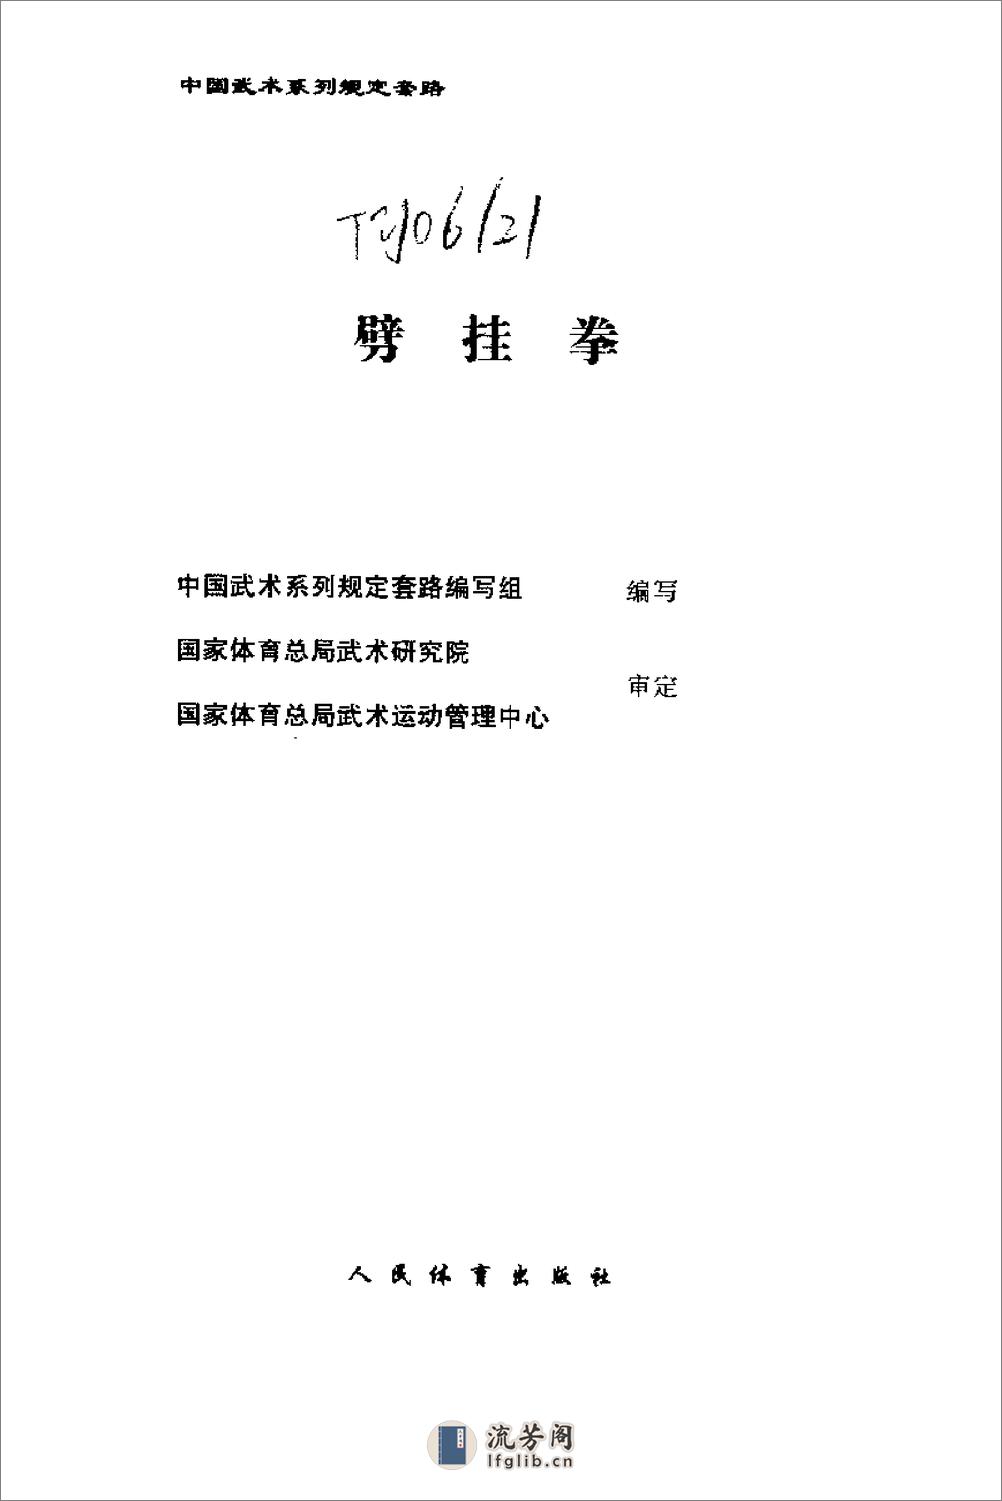 《劈挂拳》中国武术系列规定套路编写组 - 第2页预览图